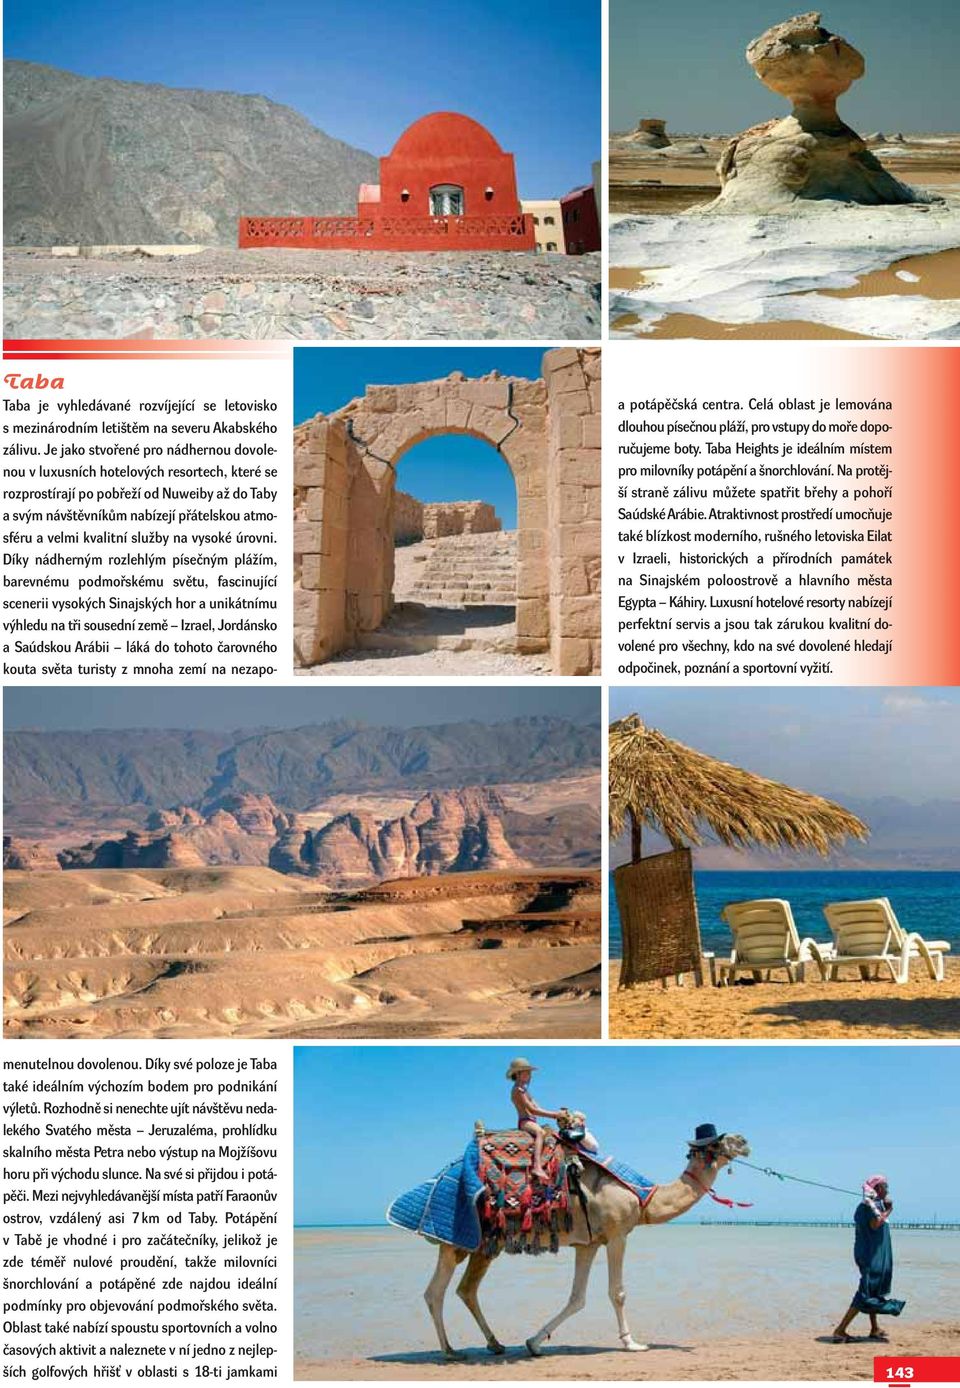 Atraktivnost prostředí umocňuje také blízkost moderního, rušného letoviska Eilat v Izraeli, historických a přírodních památek na Sinajském poloostrově a hlavního města Egypta Káhiry.